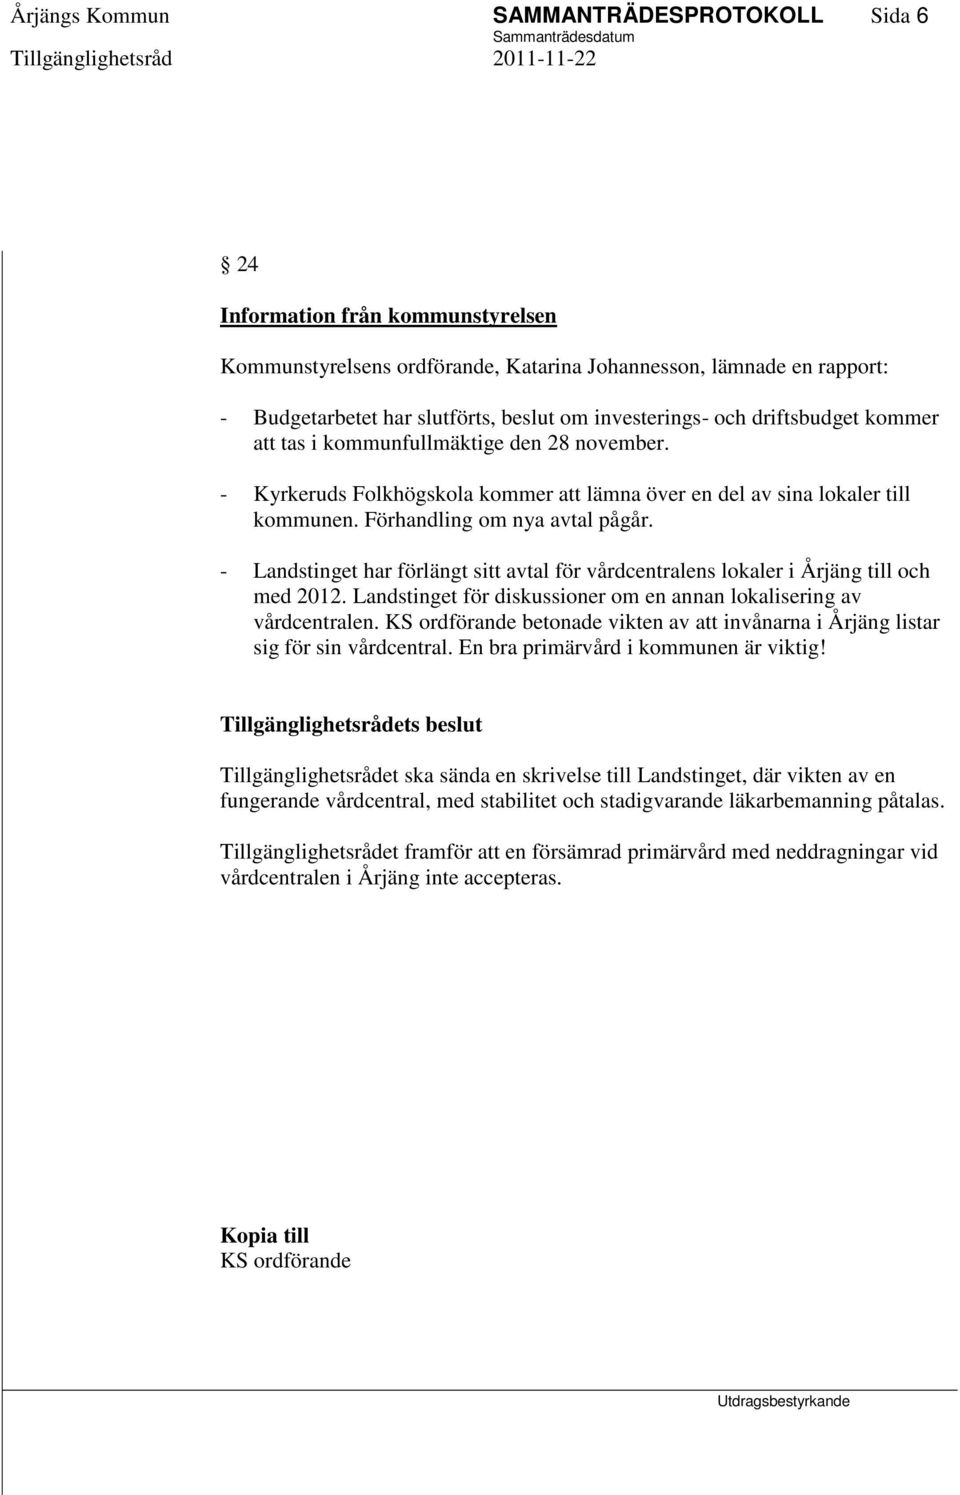 - Landstinget har förlängt sitt avtal för vårdcentralens lokaler i Årjäng till och med 2012. Landstinget för diskussioner om en annan lokalisering av vårdcentralen.